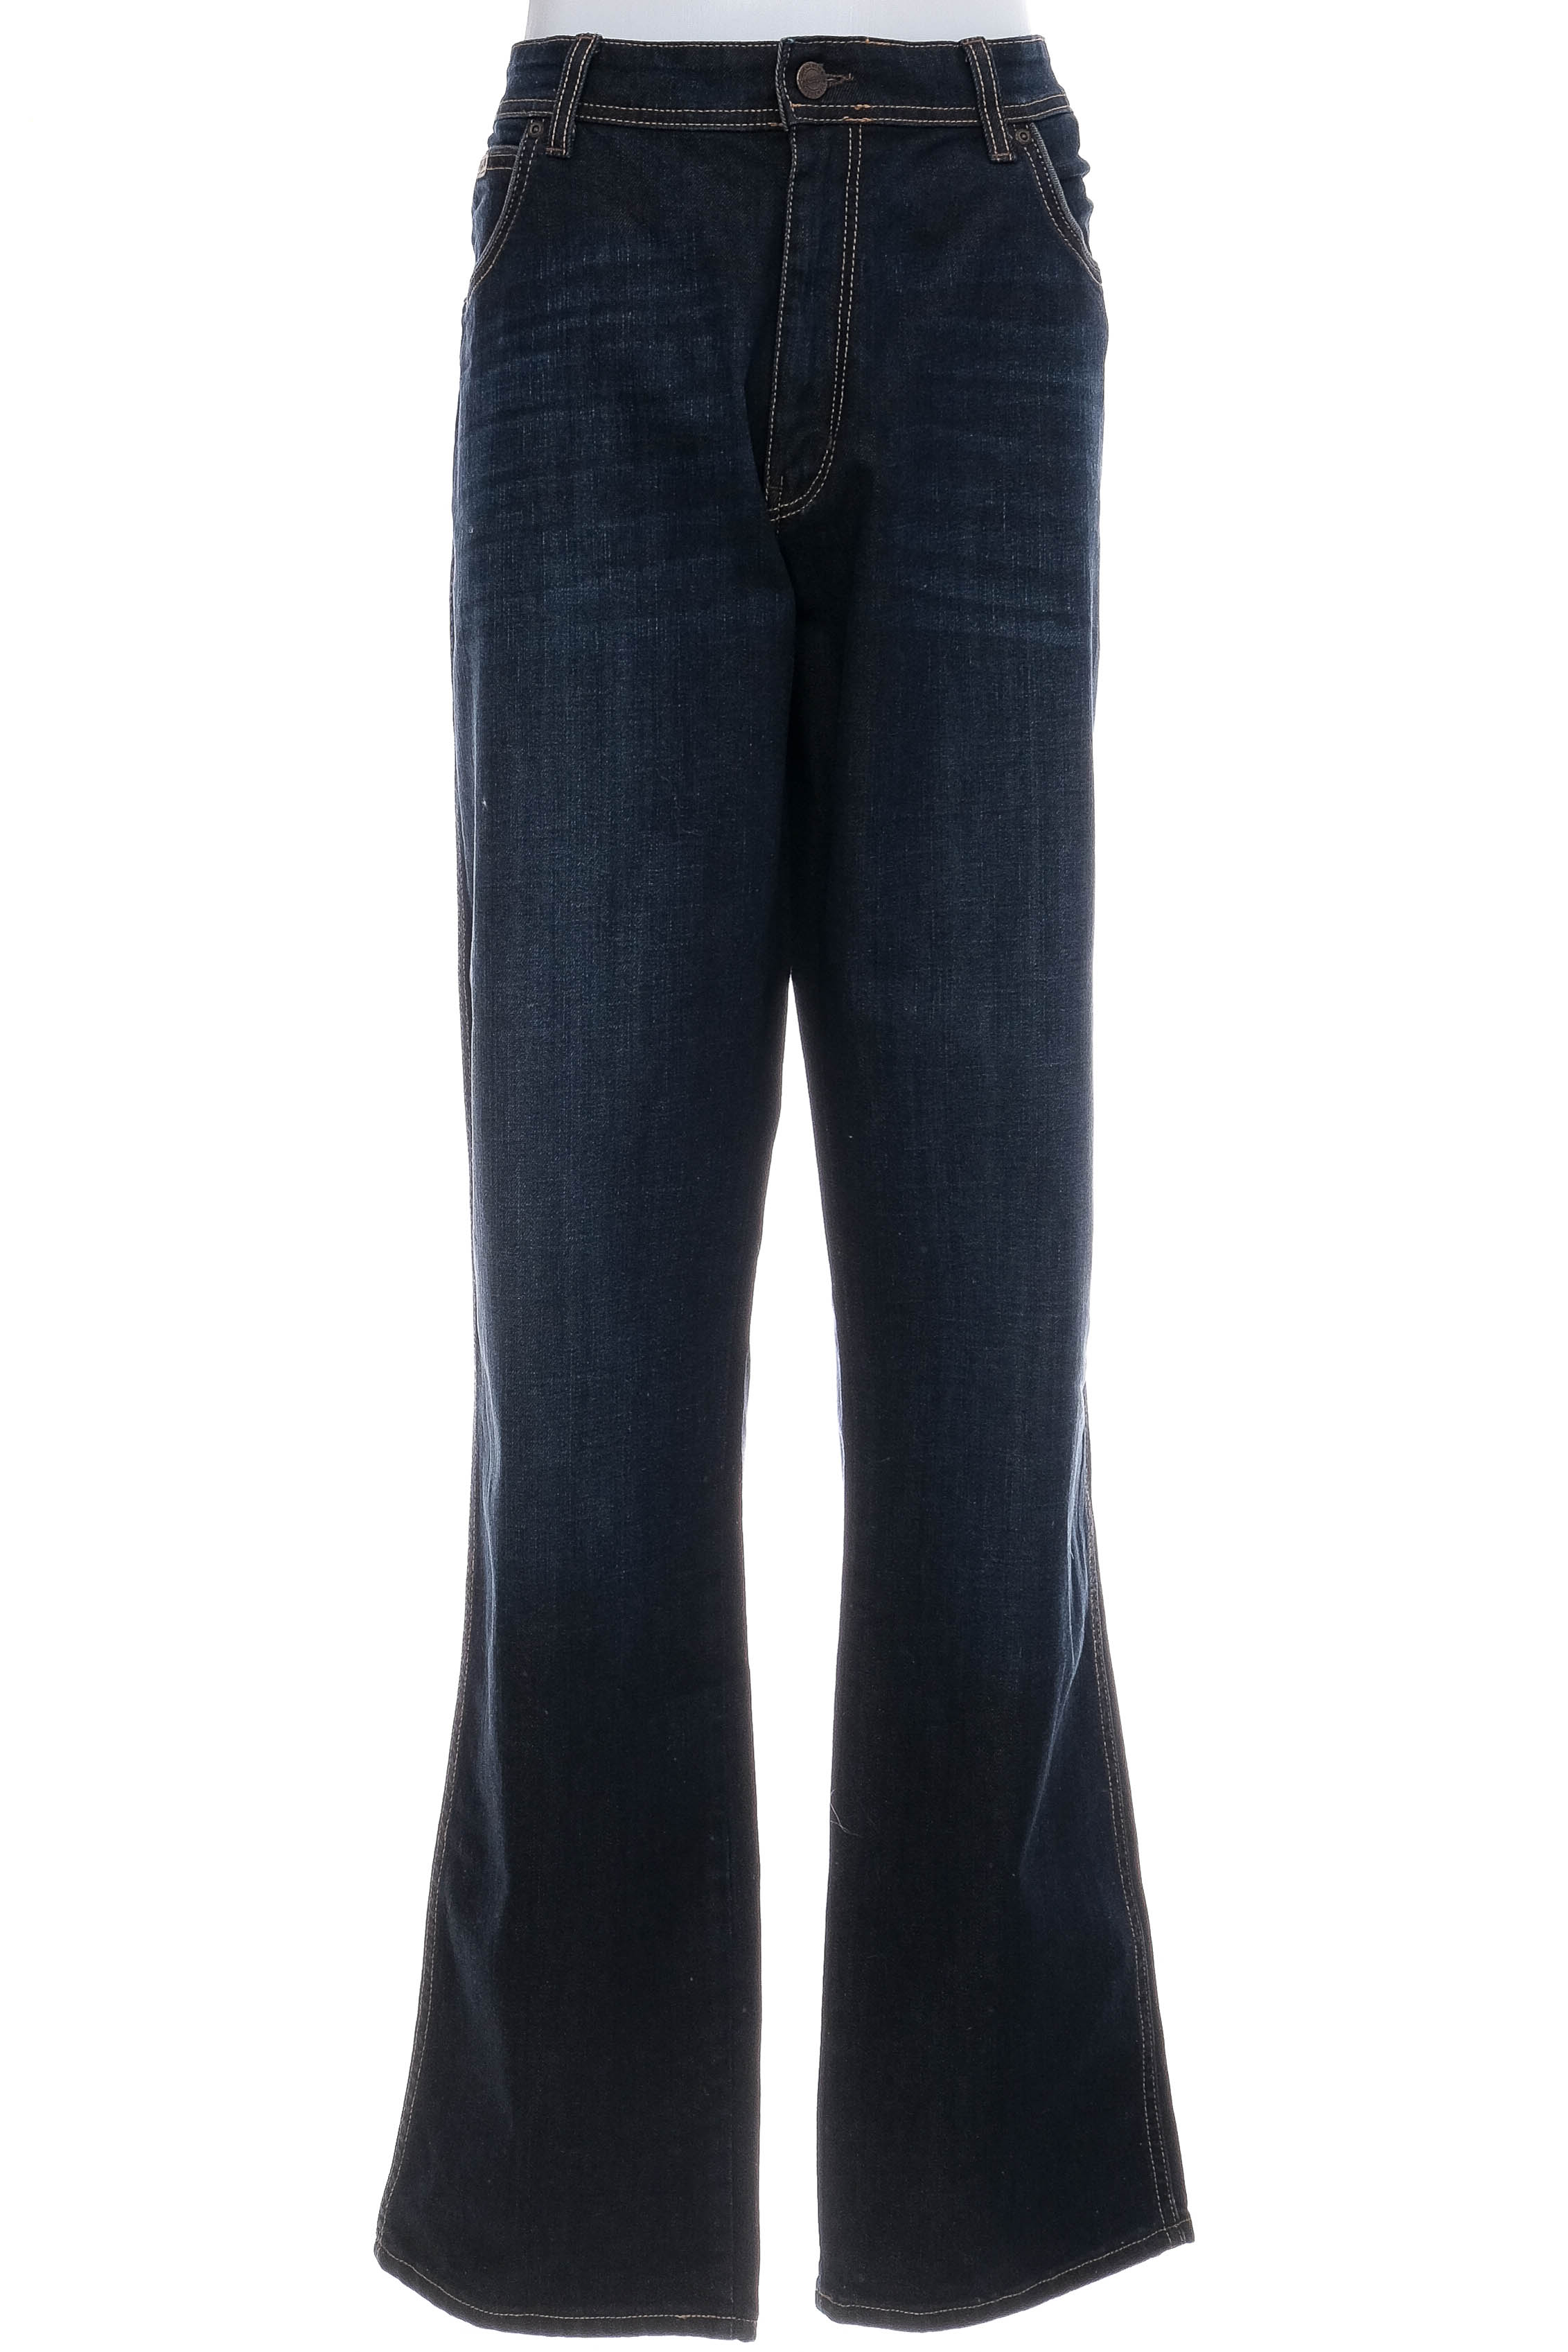 Jeans pentru bărbăți - Wrangler - 0